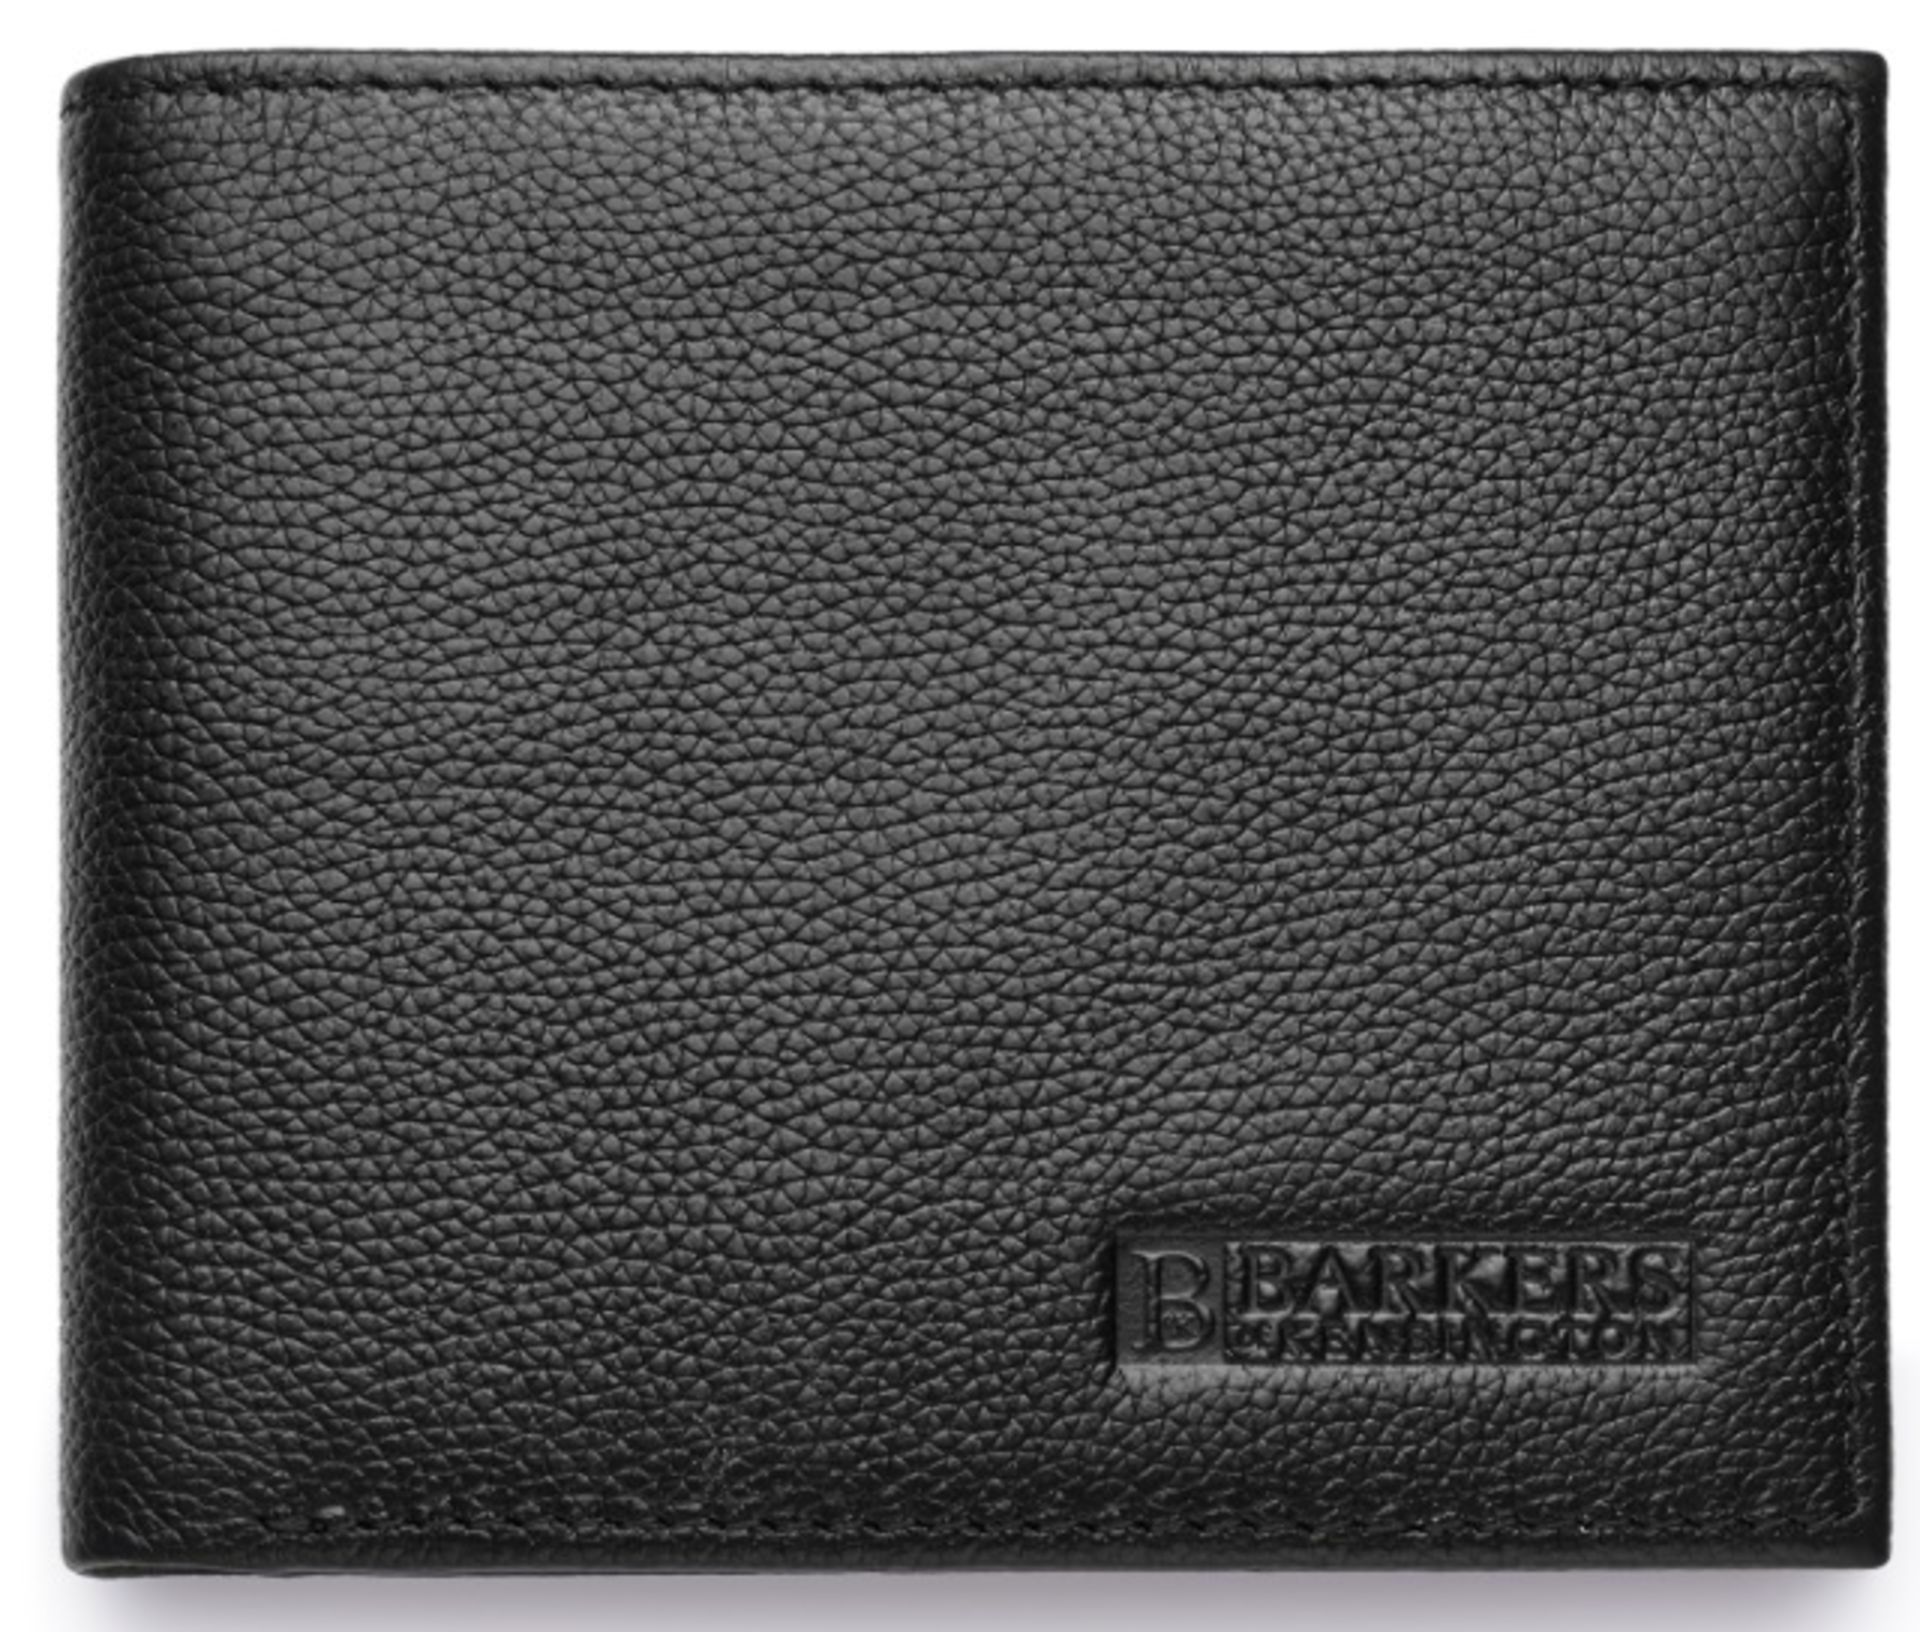 V Brand New Barkers Of Kensington Gents Black Genuine Leather Wallet (SRP £69.99)